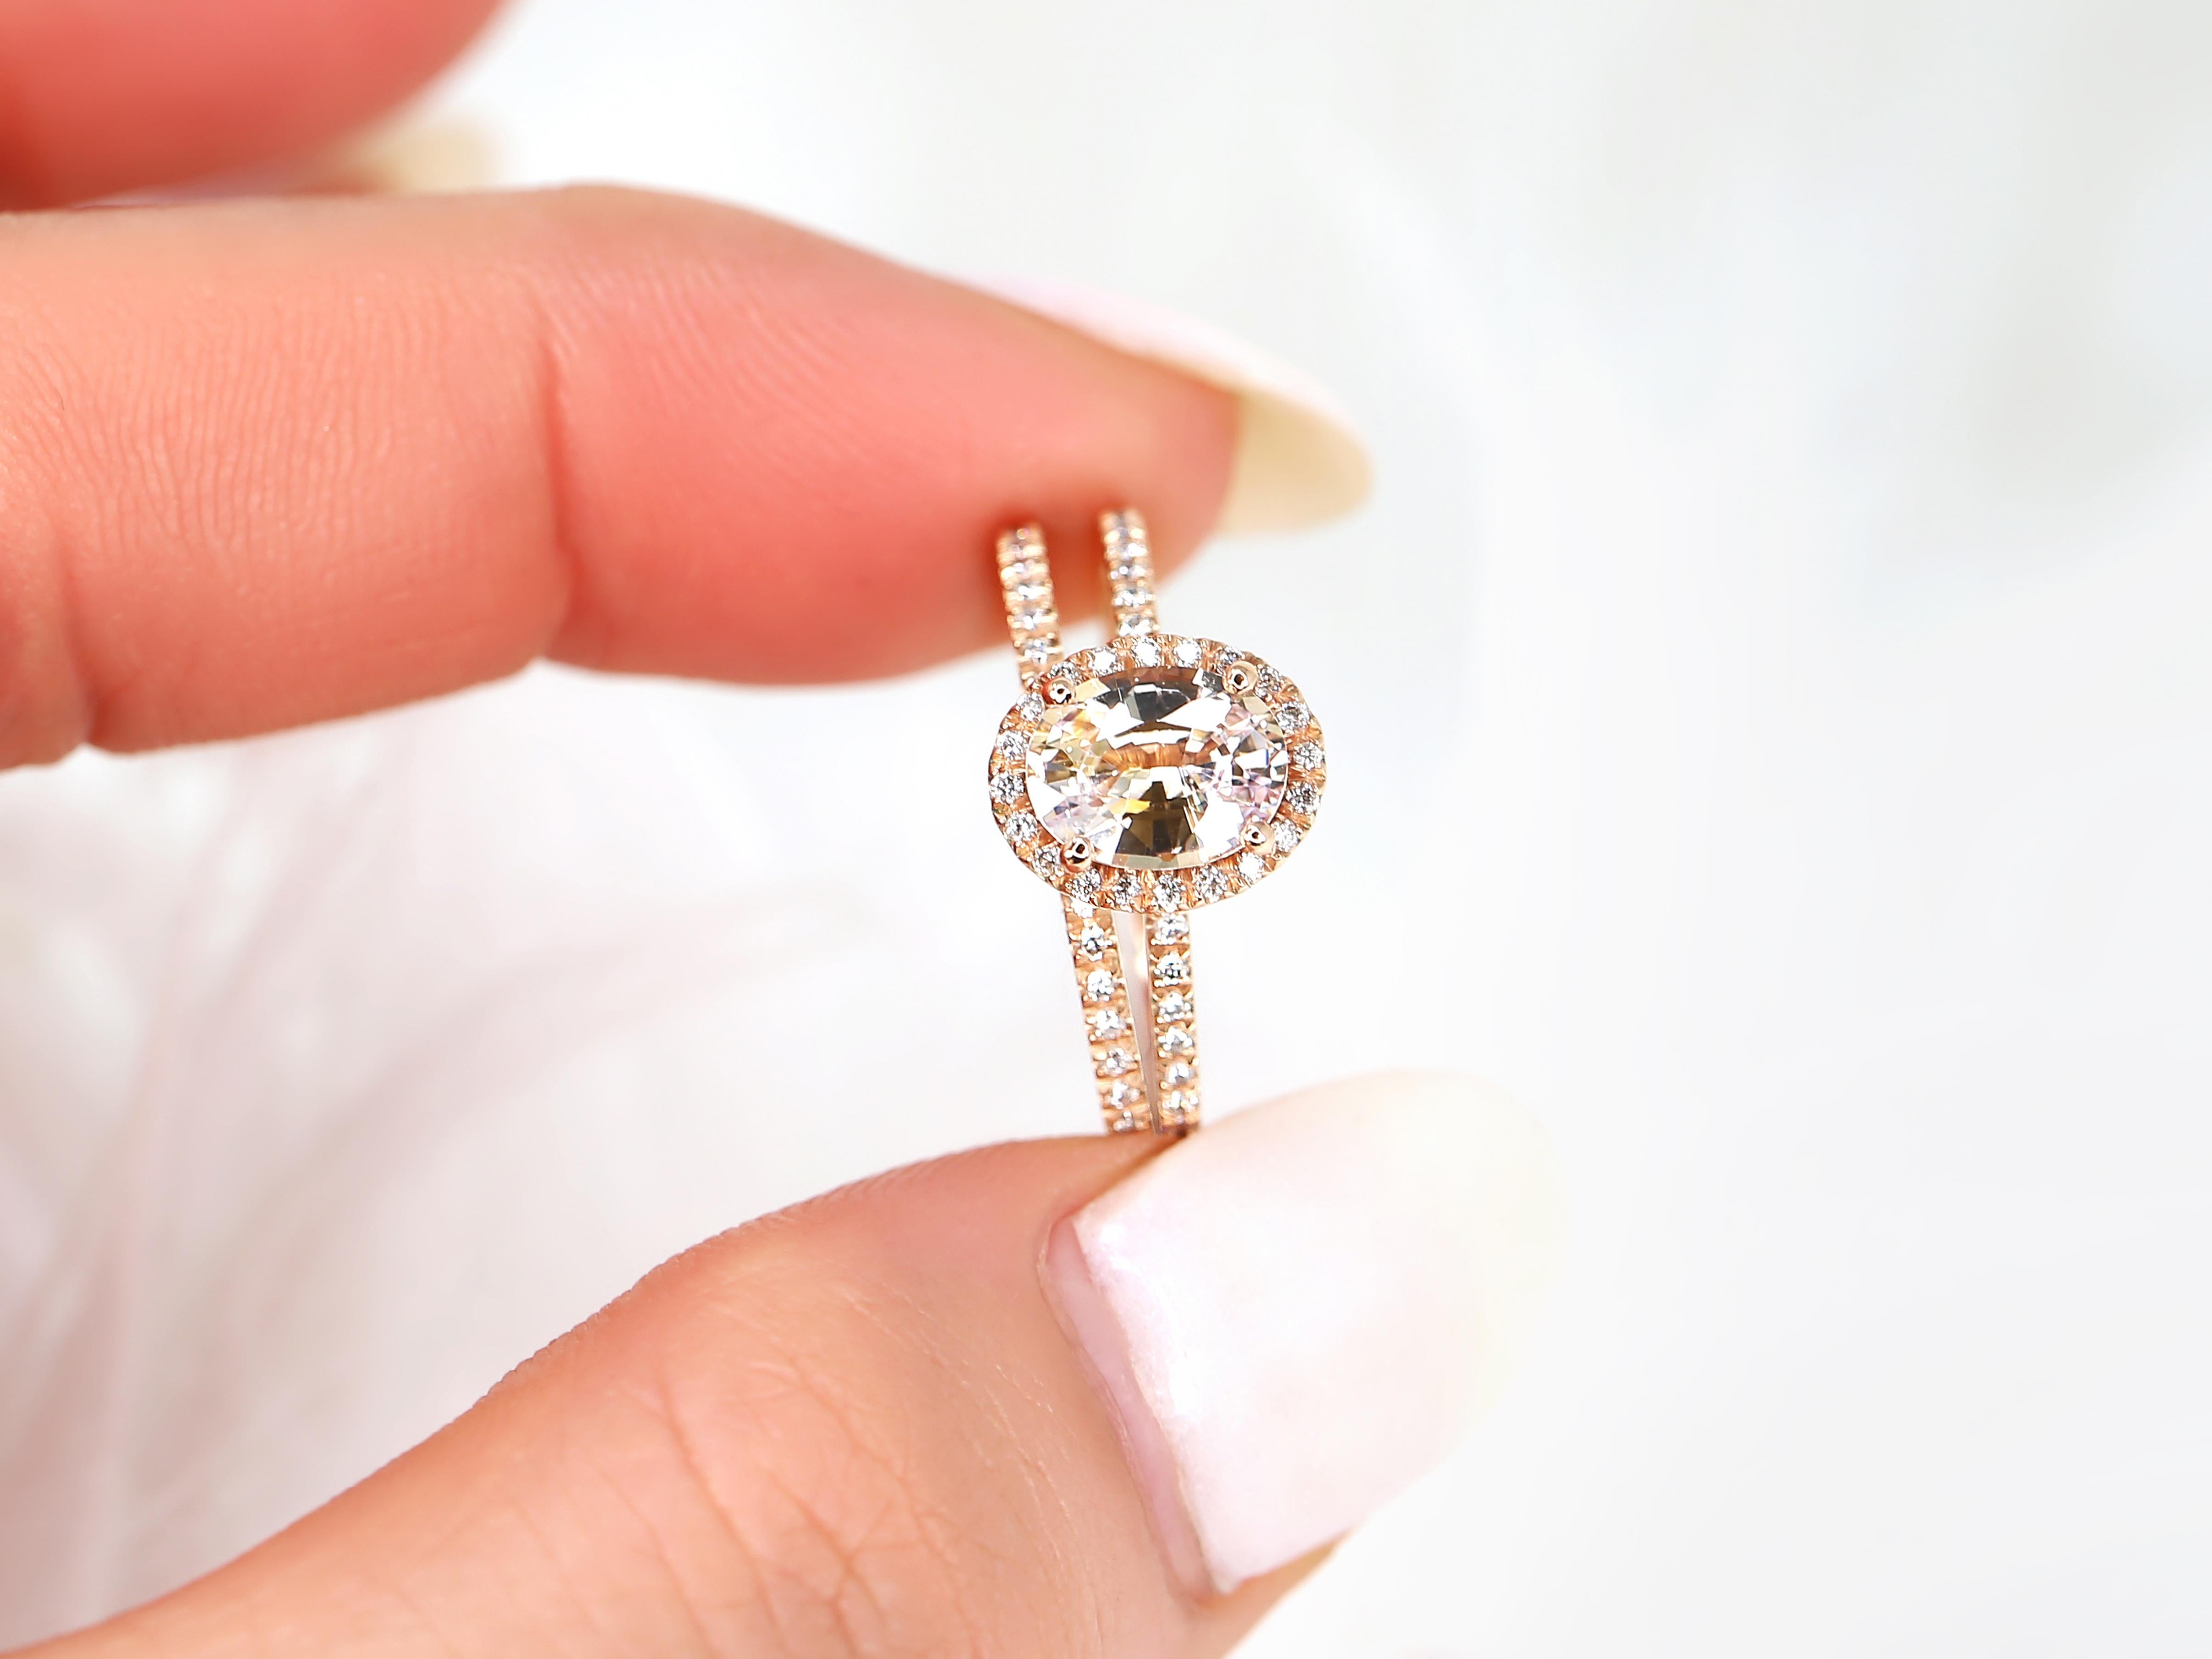 Strahlen Sie Eleganz und Romantik aus mit unserem ovalen Pfirsich-Champagner-Saphir-Halo-Brautset. Mit einem fesselnden ovalen Mittelstein, der von einem Halo aus Diamanten umgeben ist und durch klassische Pave-Diamanten ergänzt wird.

Detail